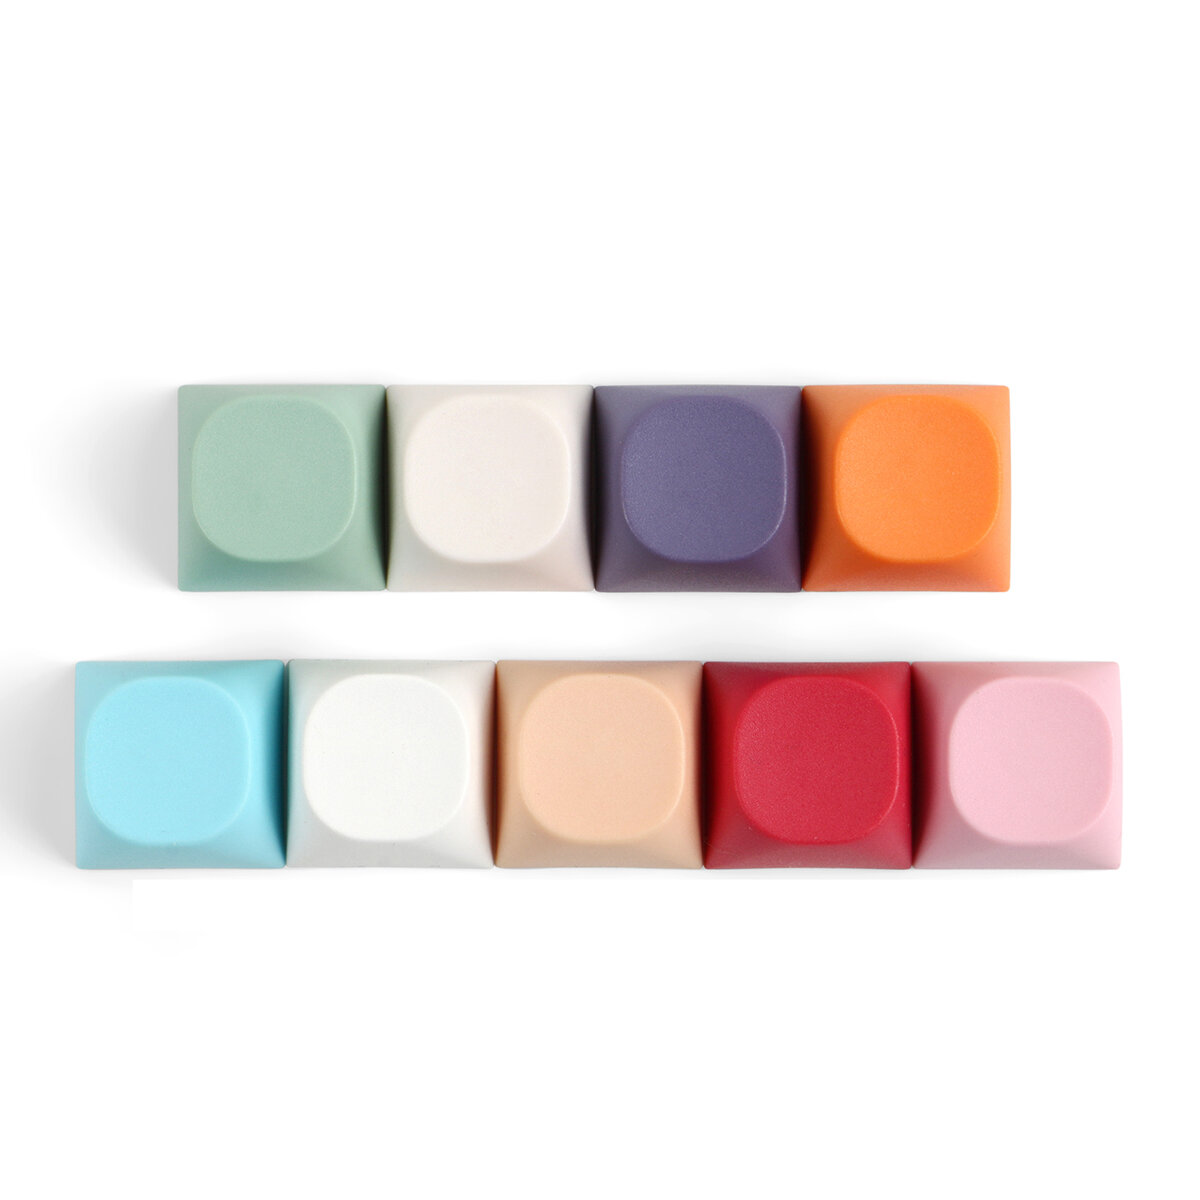 10 STKS Candy Color Blank Keycap Set MA Profile PBT Keycaps voor mechanische toetsenborden